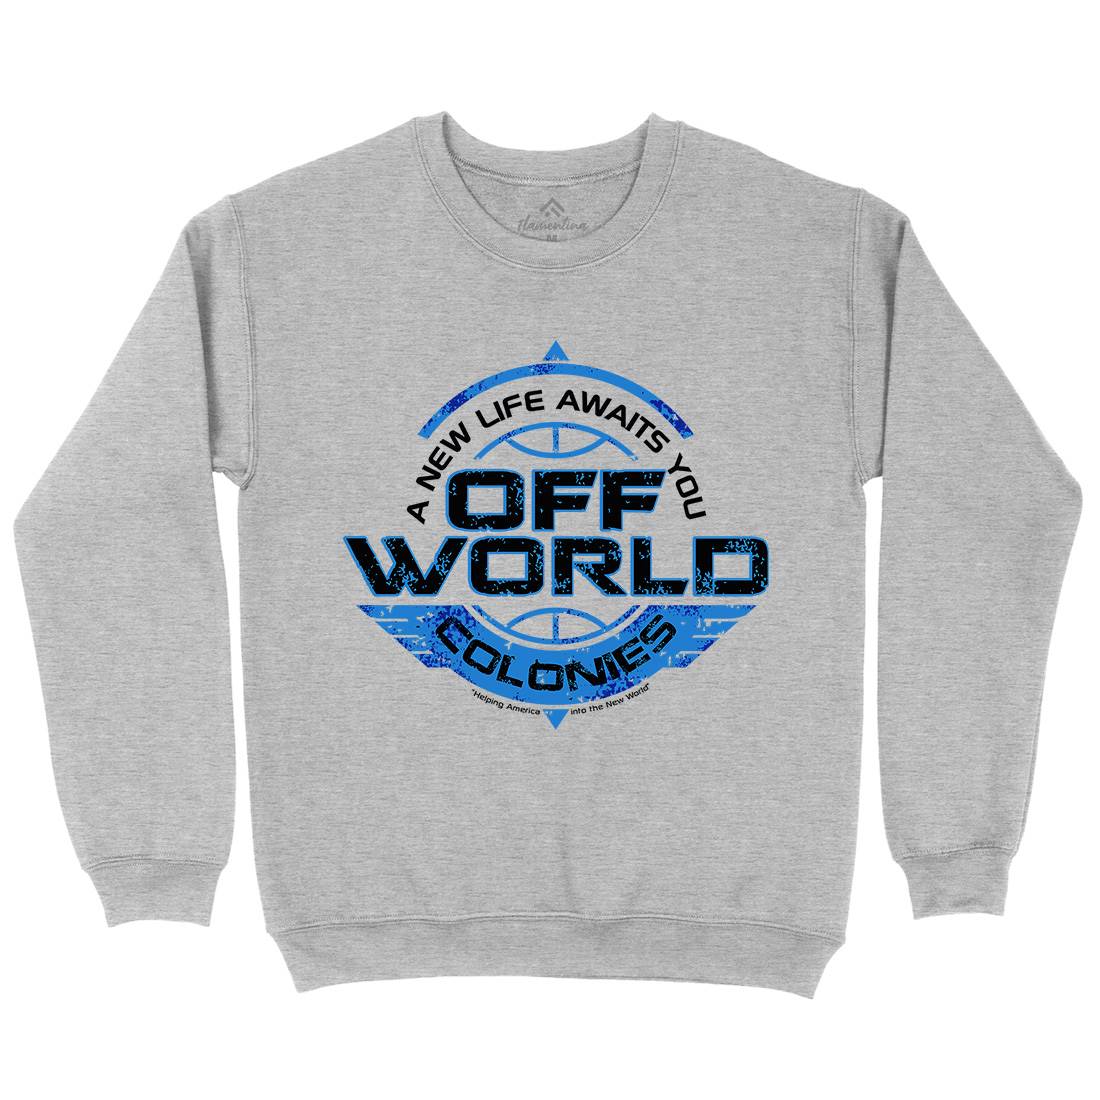 Off-World Colonies Kids Crew Neck Sweatshirt Space D351